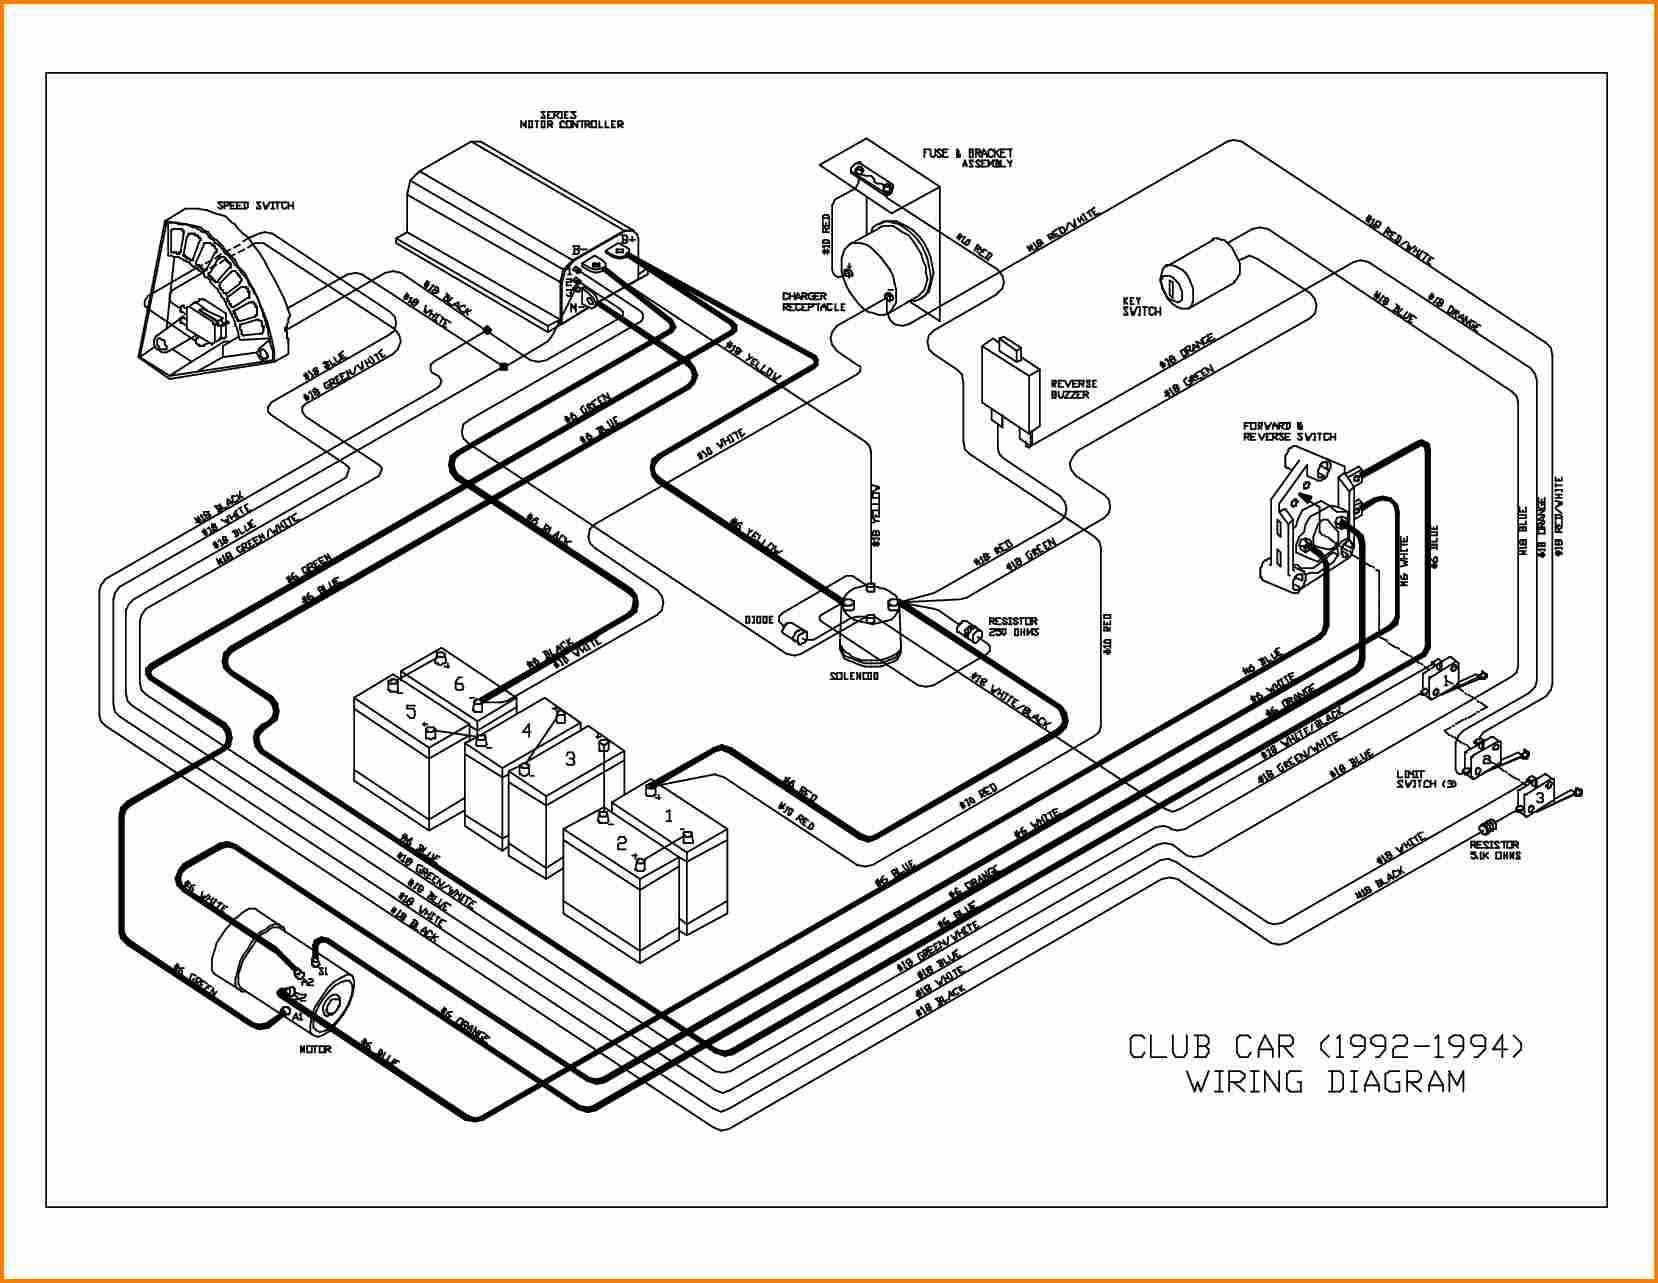 wiring diagram as well club car golf cart wiring diagram likewise rh 66 42 71 199